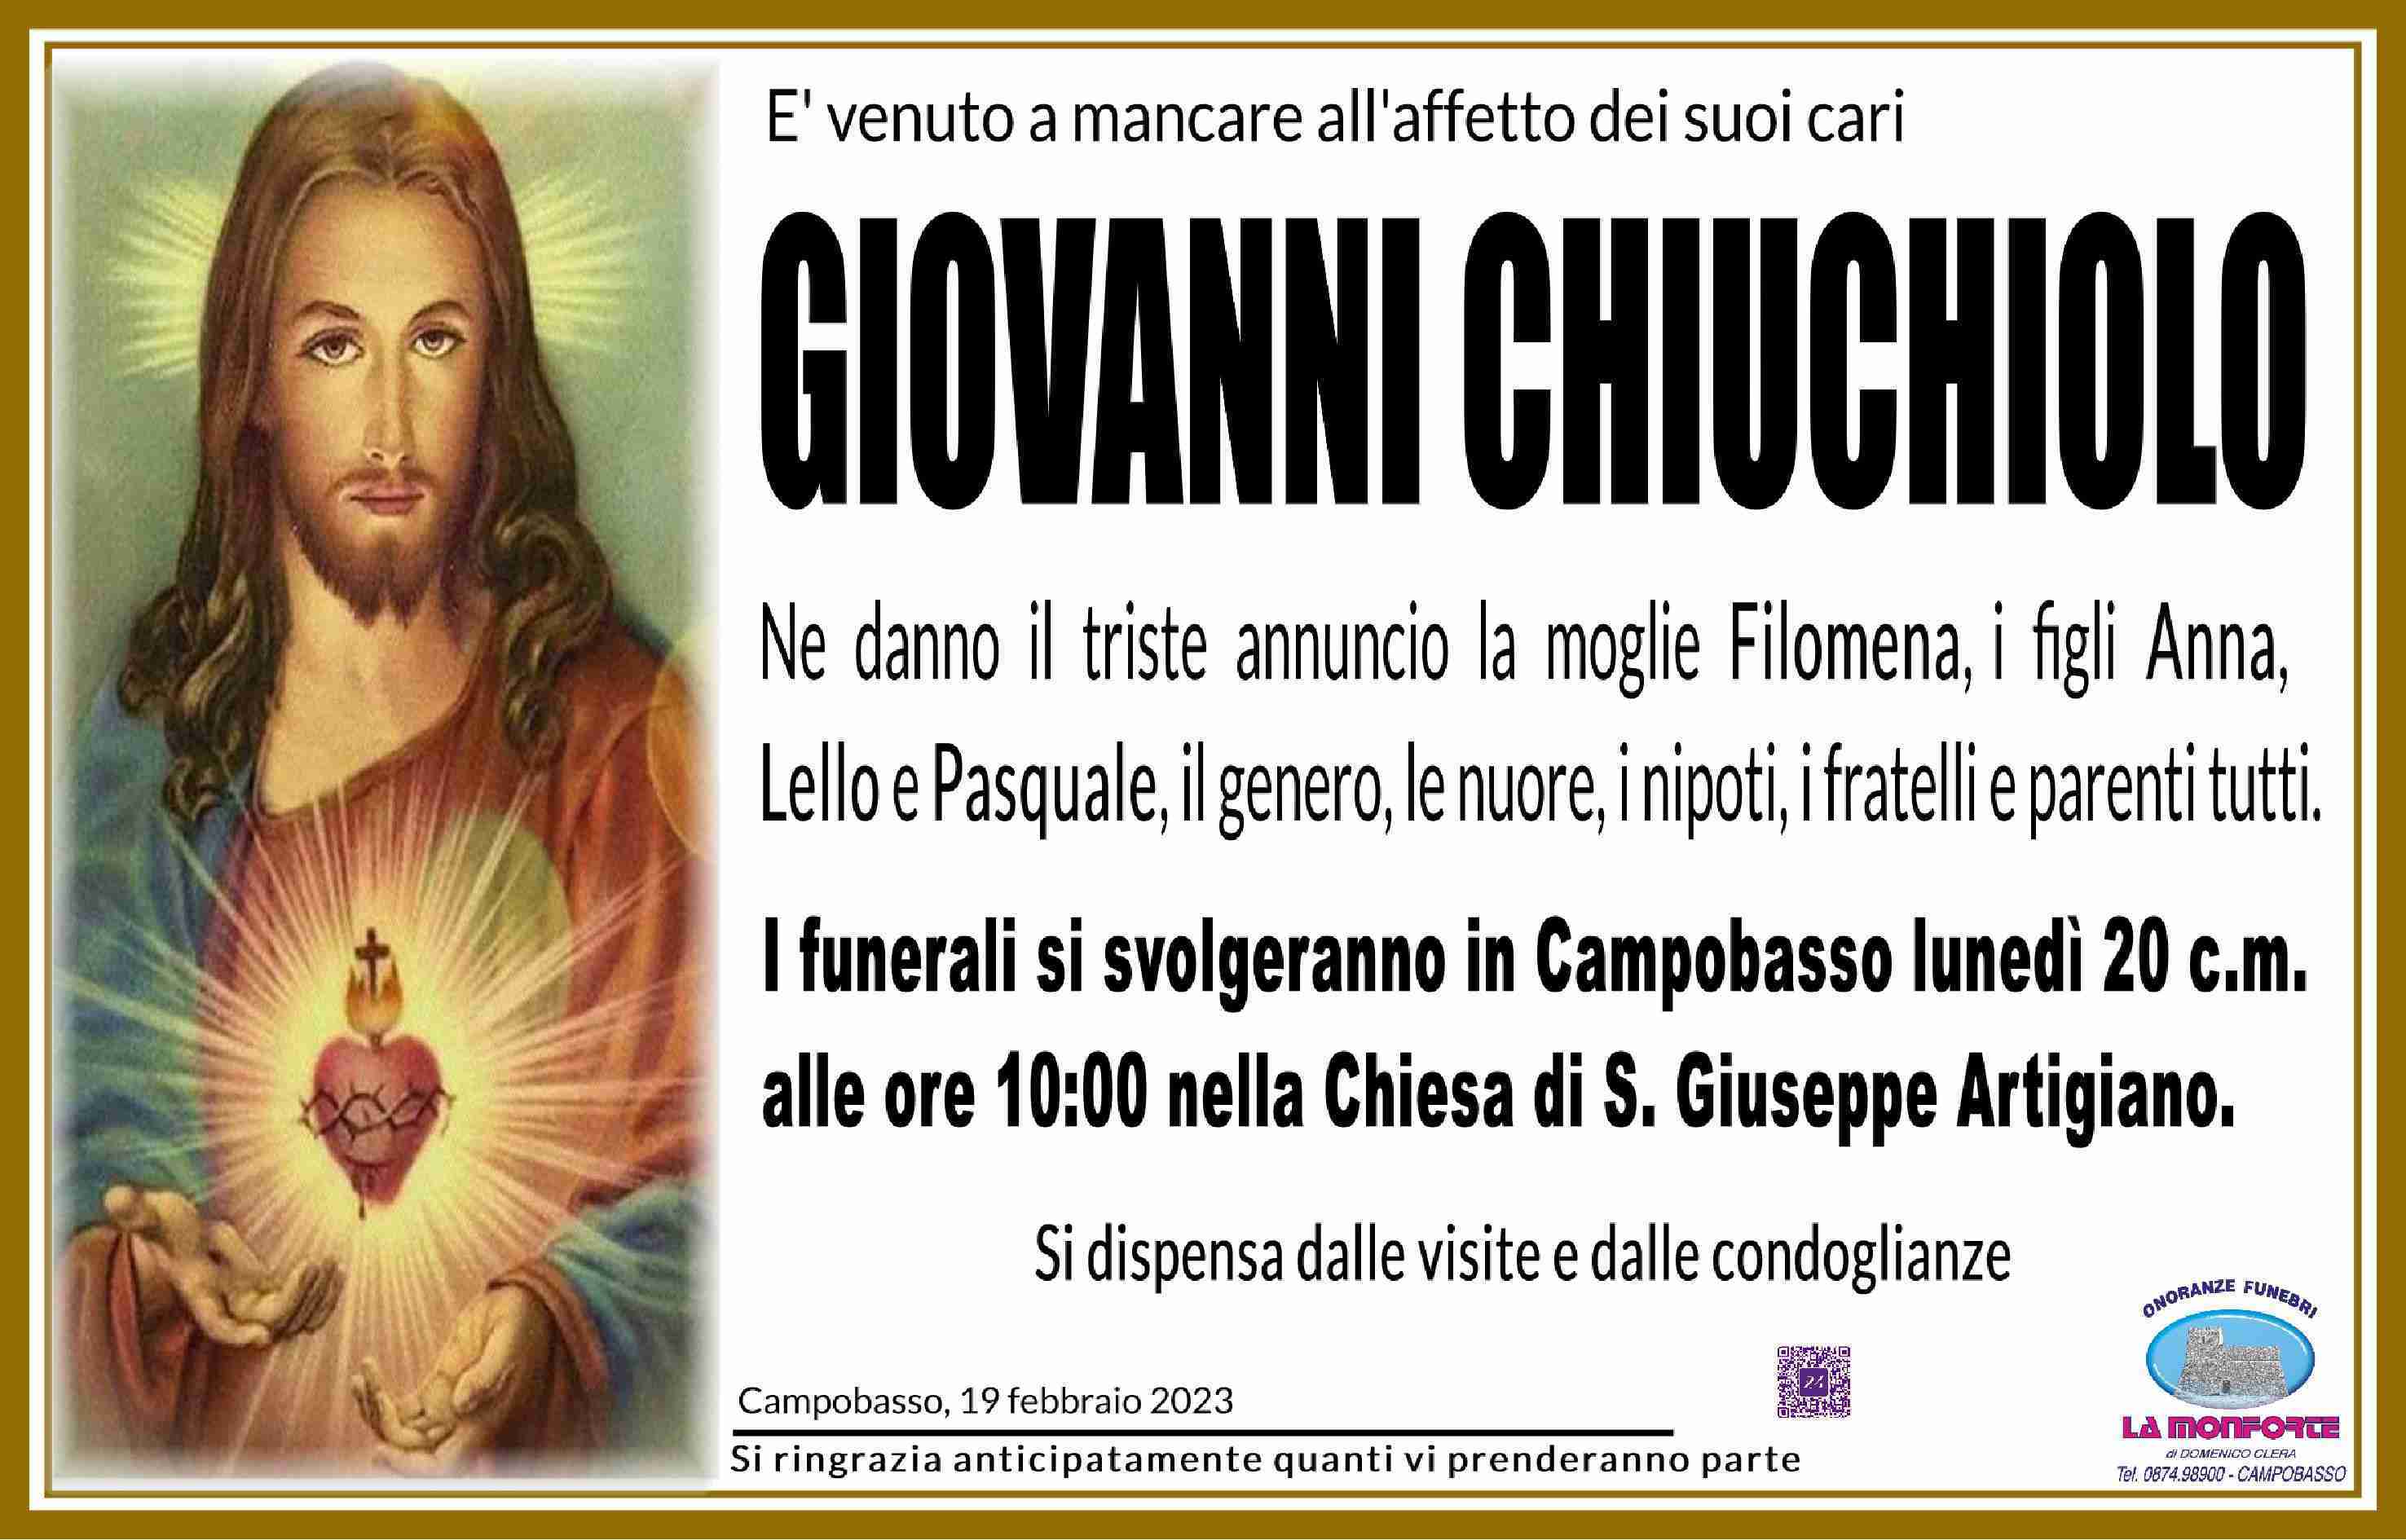 Giovanni Chiuchiolo